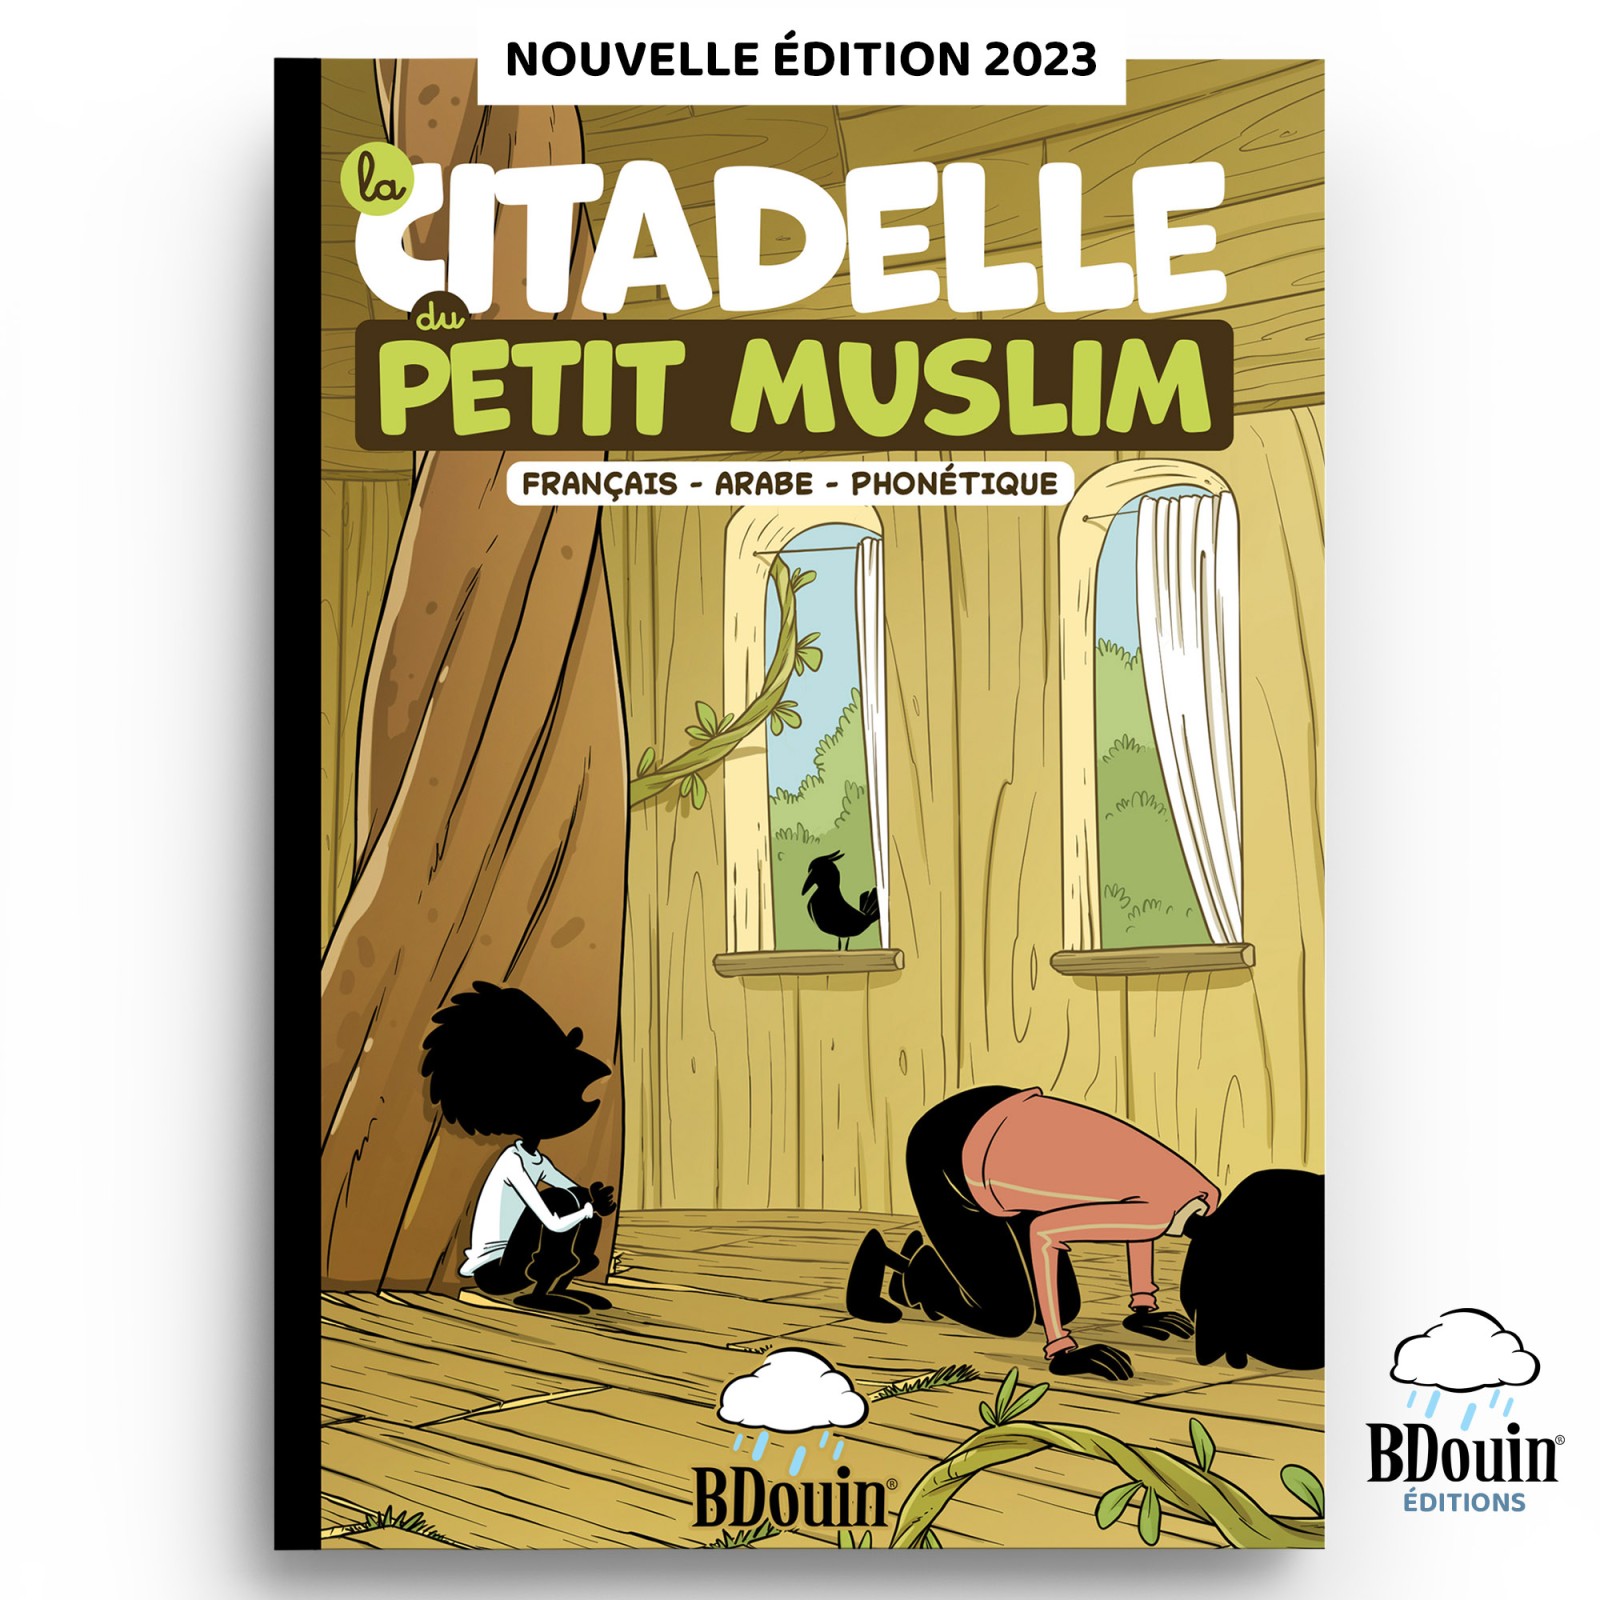 Citadelle du petit muslim, by Bdouin